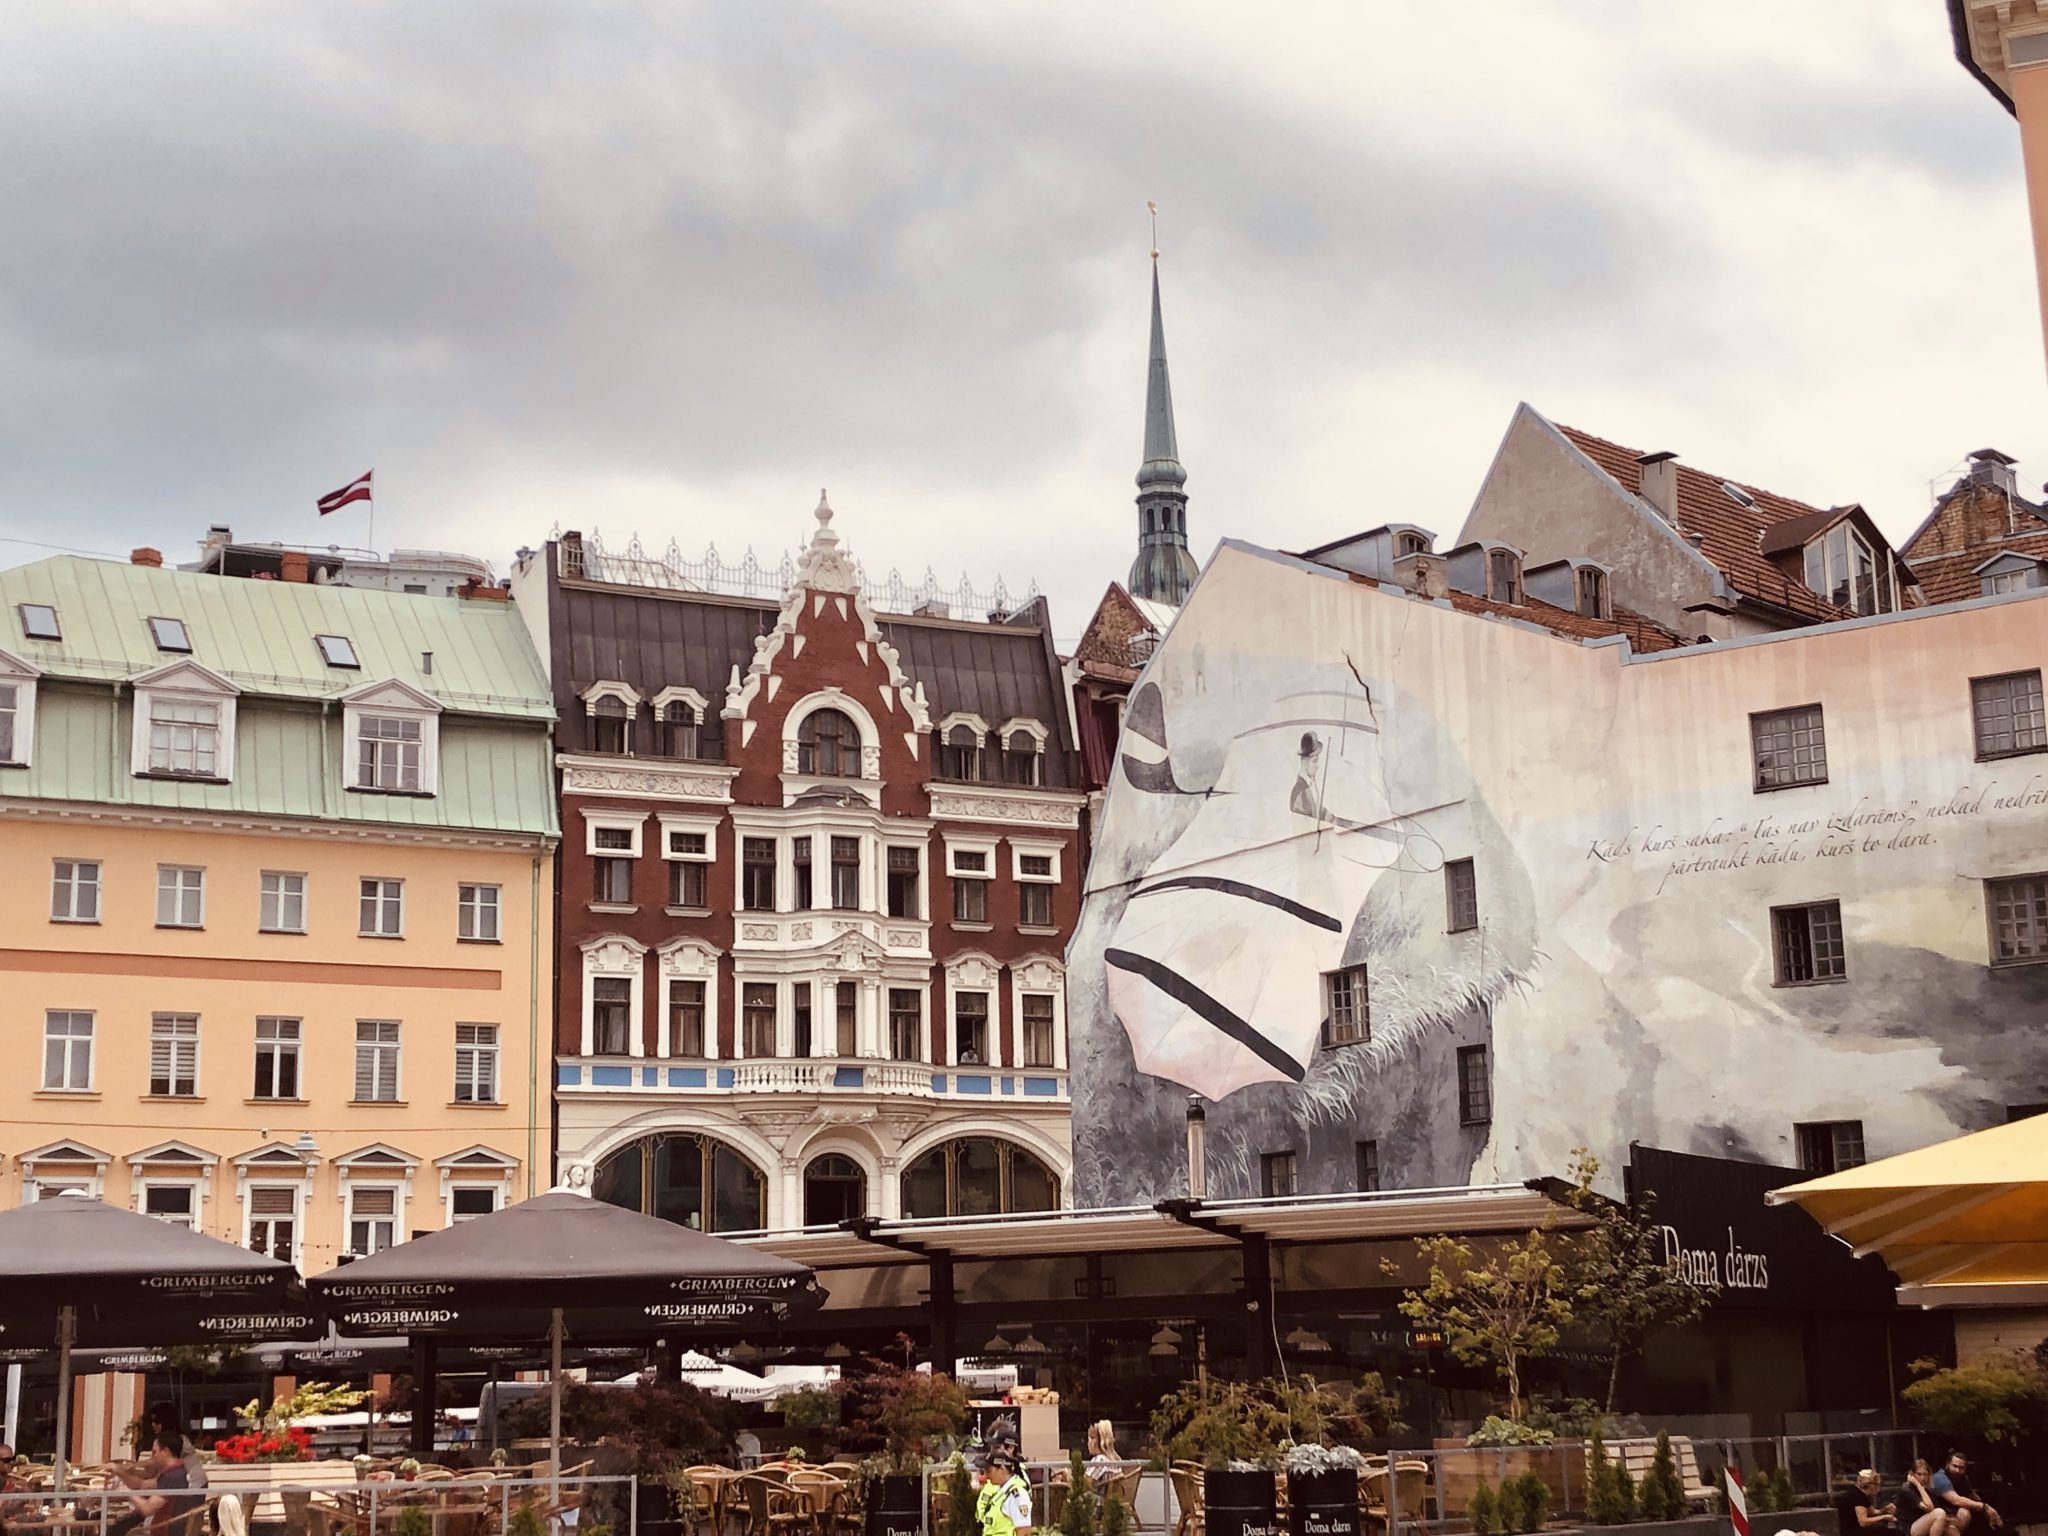 Häuserzeile mit Graffiti in Rigas Altstadt